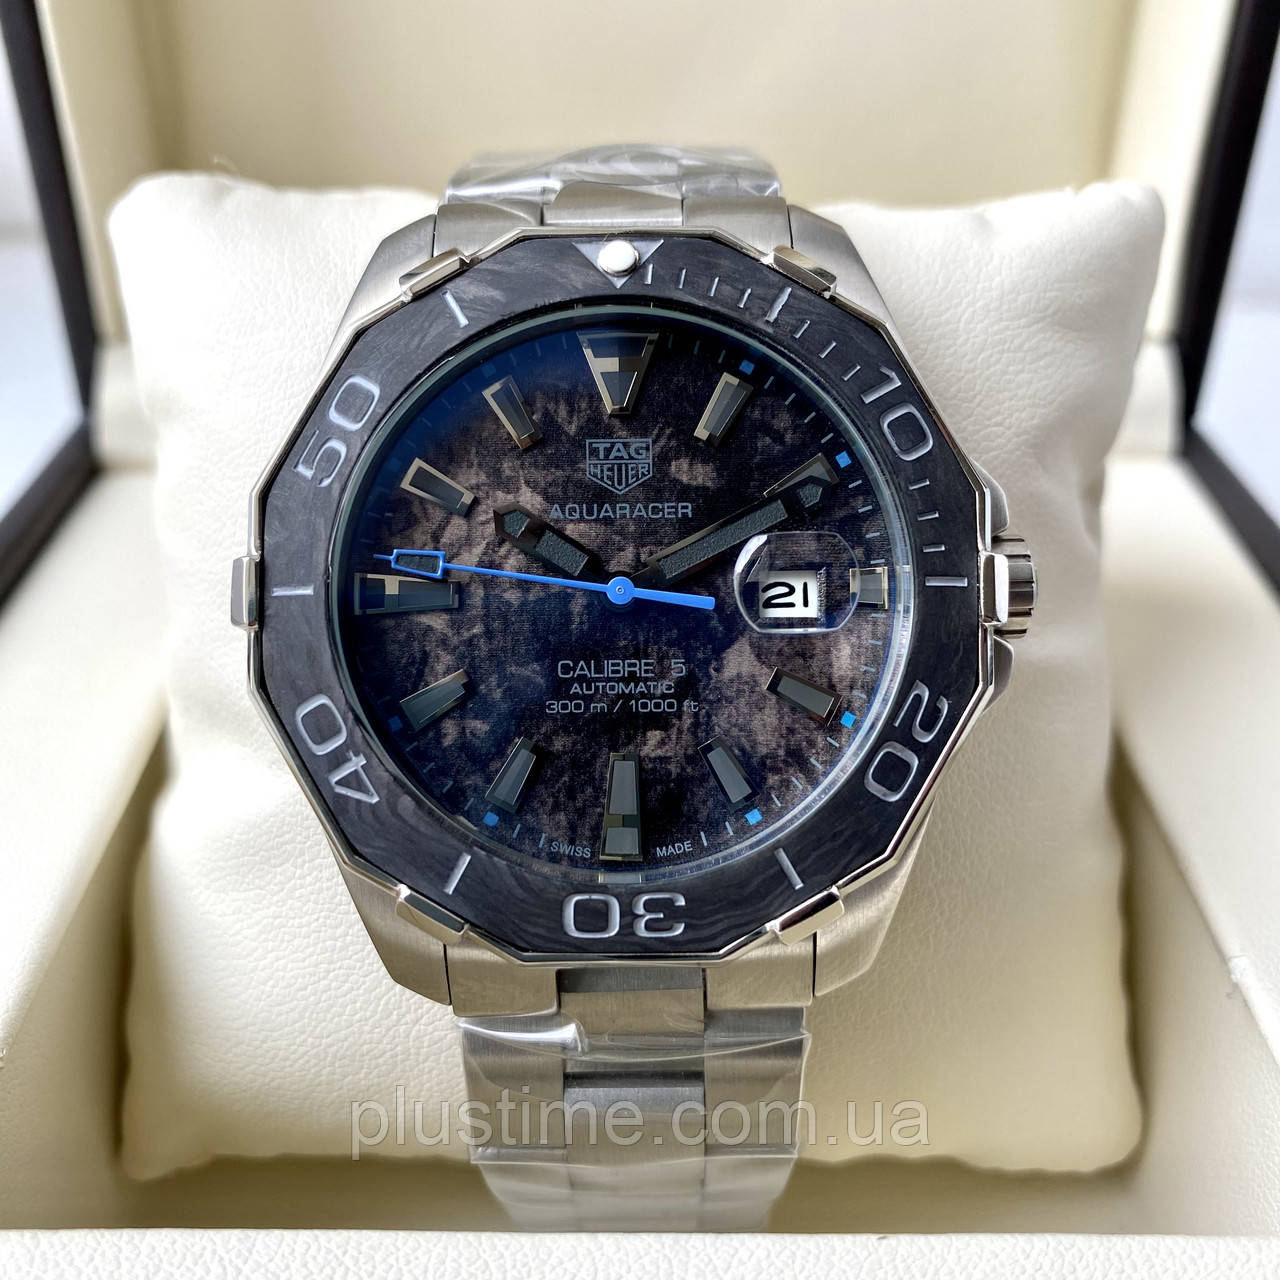 Механічні годинники Tag Heuer Aquaracer Calibre 5 blue наручні чоловічі на сталевому браслеті і сапфіром